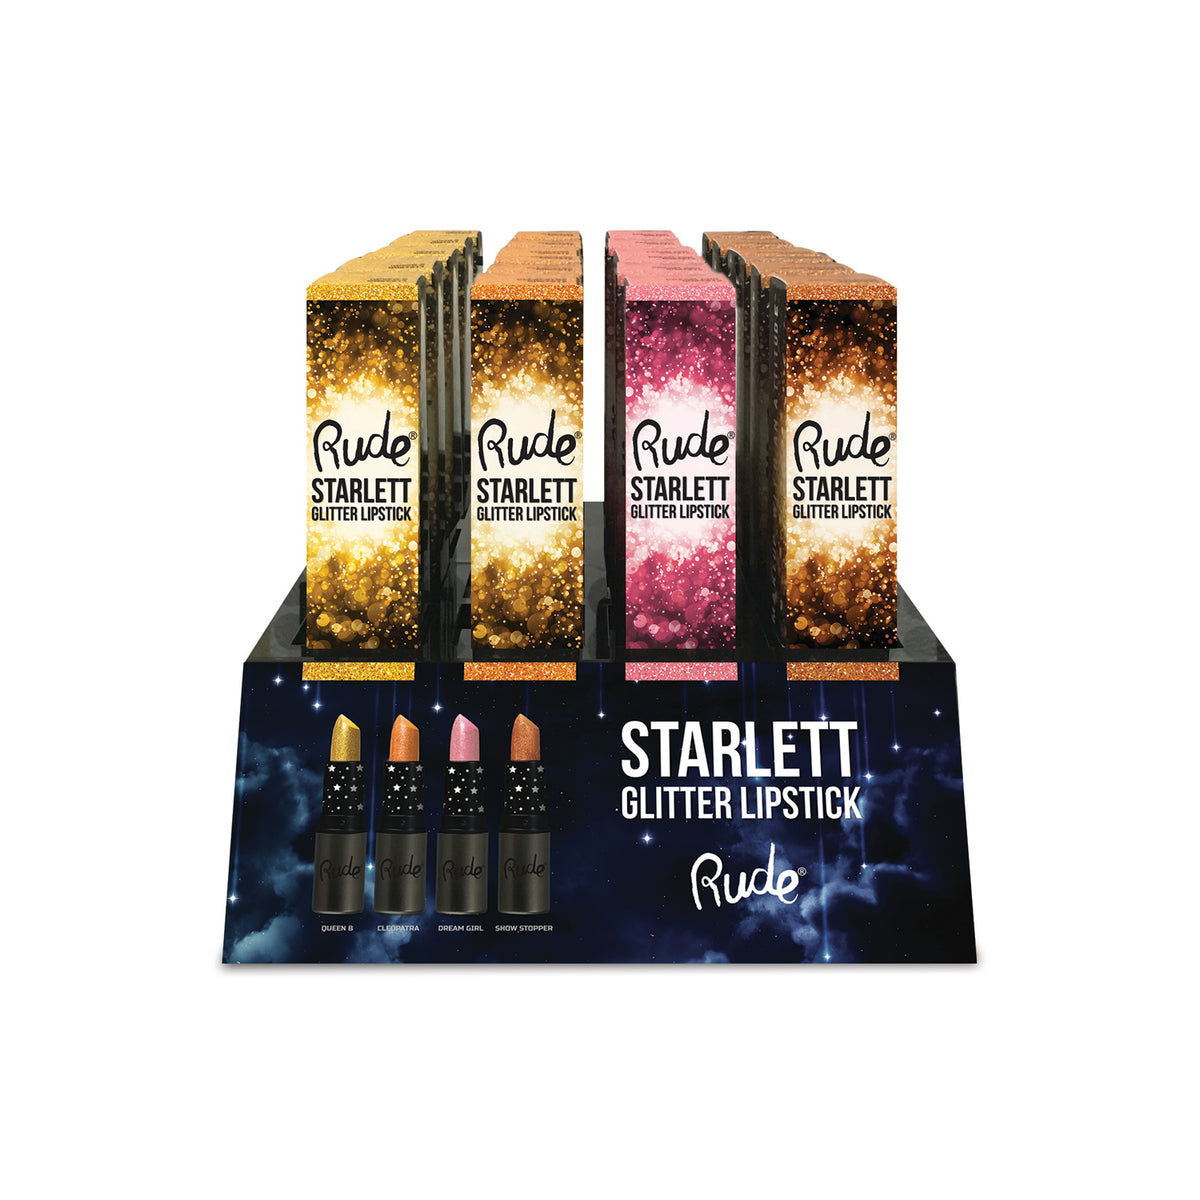 Starlett Glitter Lipstick Display Set, 48 pcs